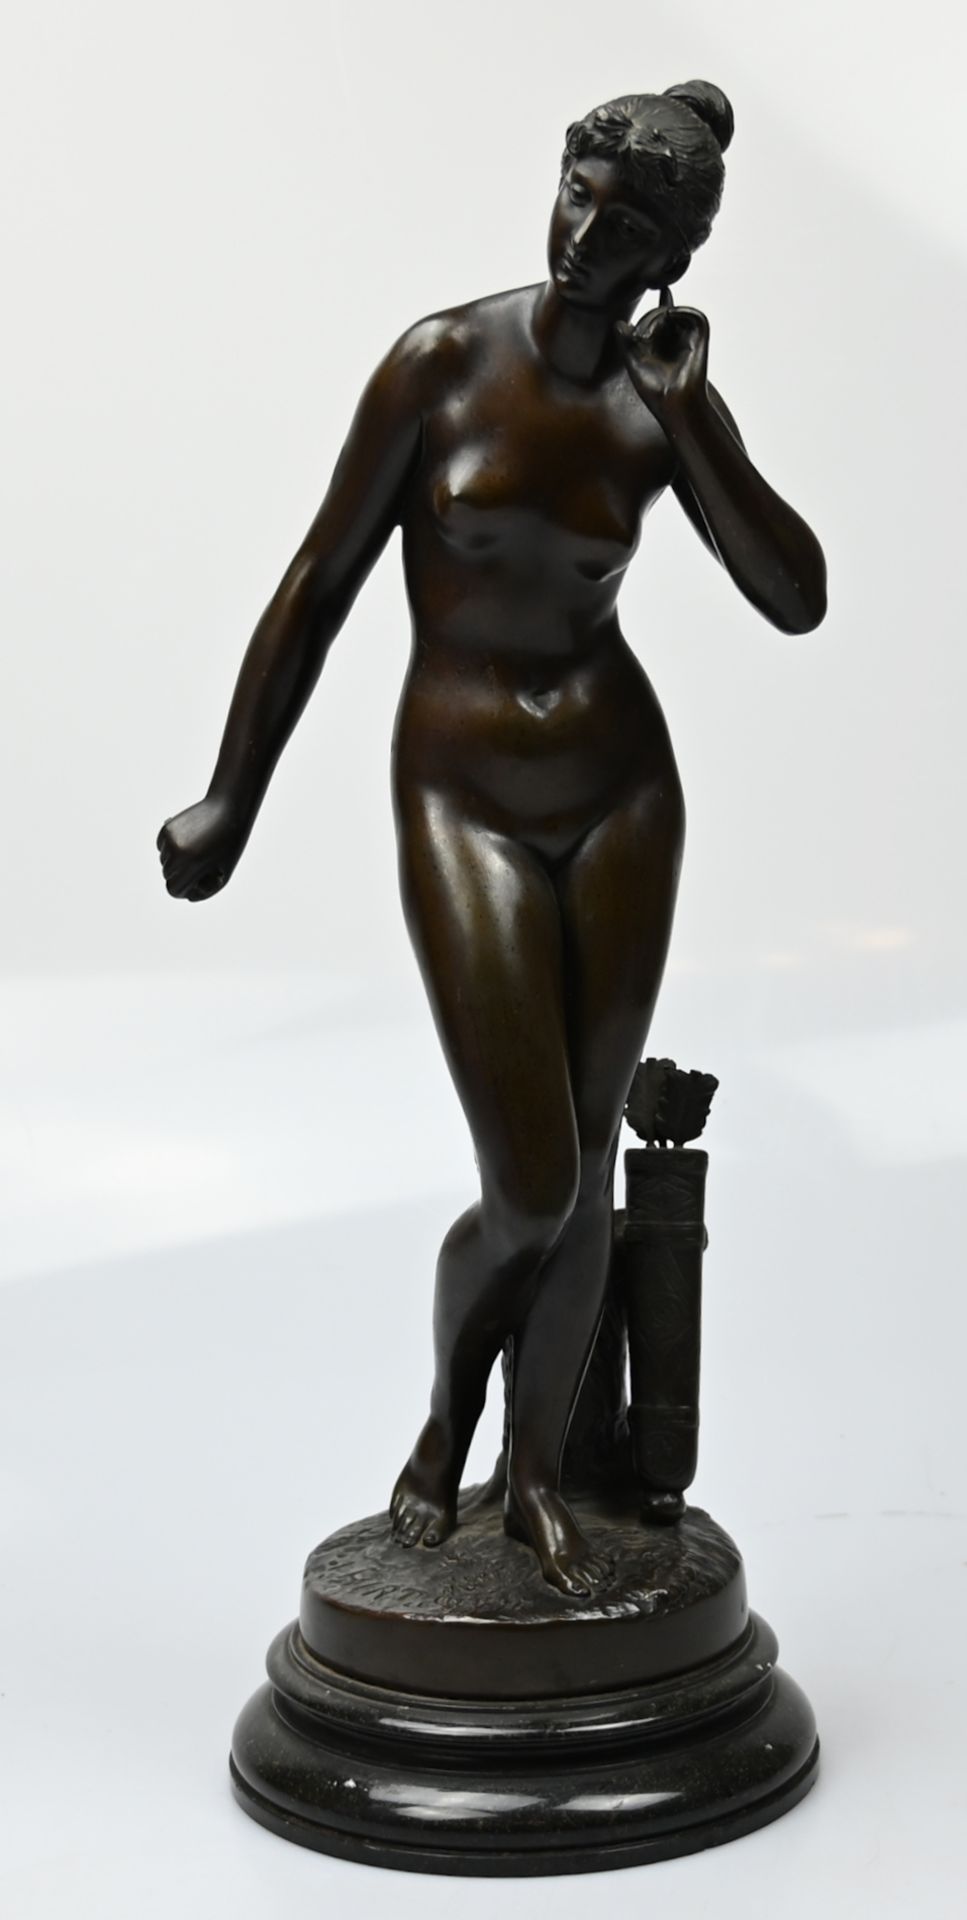 1 Bronzeplastik auf Plinthe sign. I. HIRT (wohl Johannes H. 1859 Worms-1917 Karlsruhe) "Diana - Die